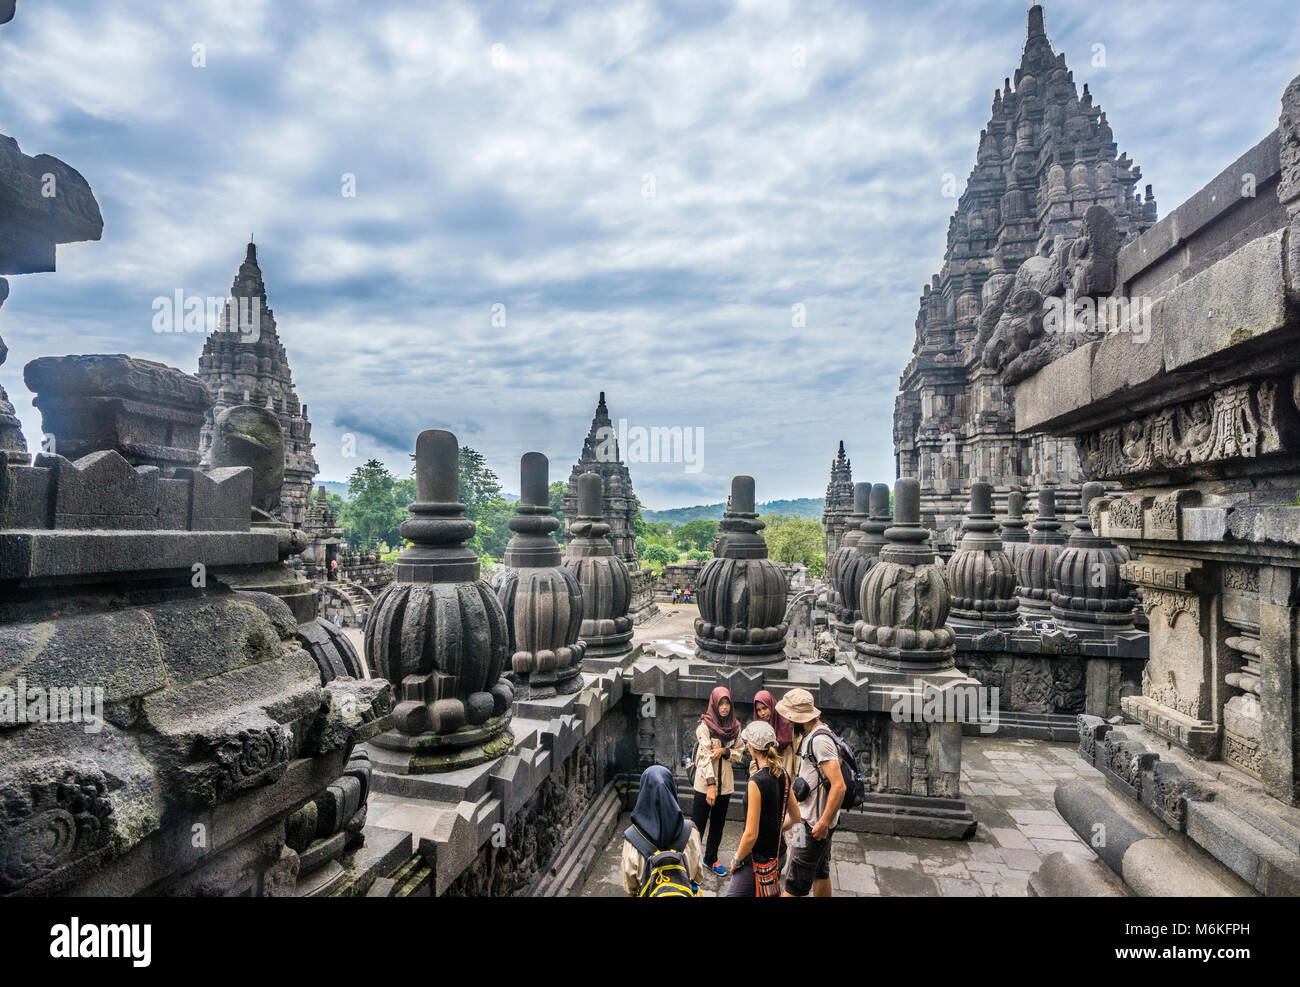 Indonesien, Central Java, Besucher der bas-relief Galerien entlang der Balustraden Der Shiva Tempel in der Mitte des 9. Jahrhunderts Prambanan Hindu Te erkunden Stockfoto